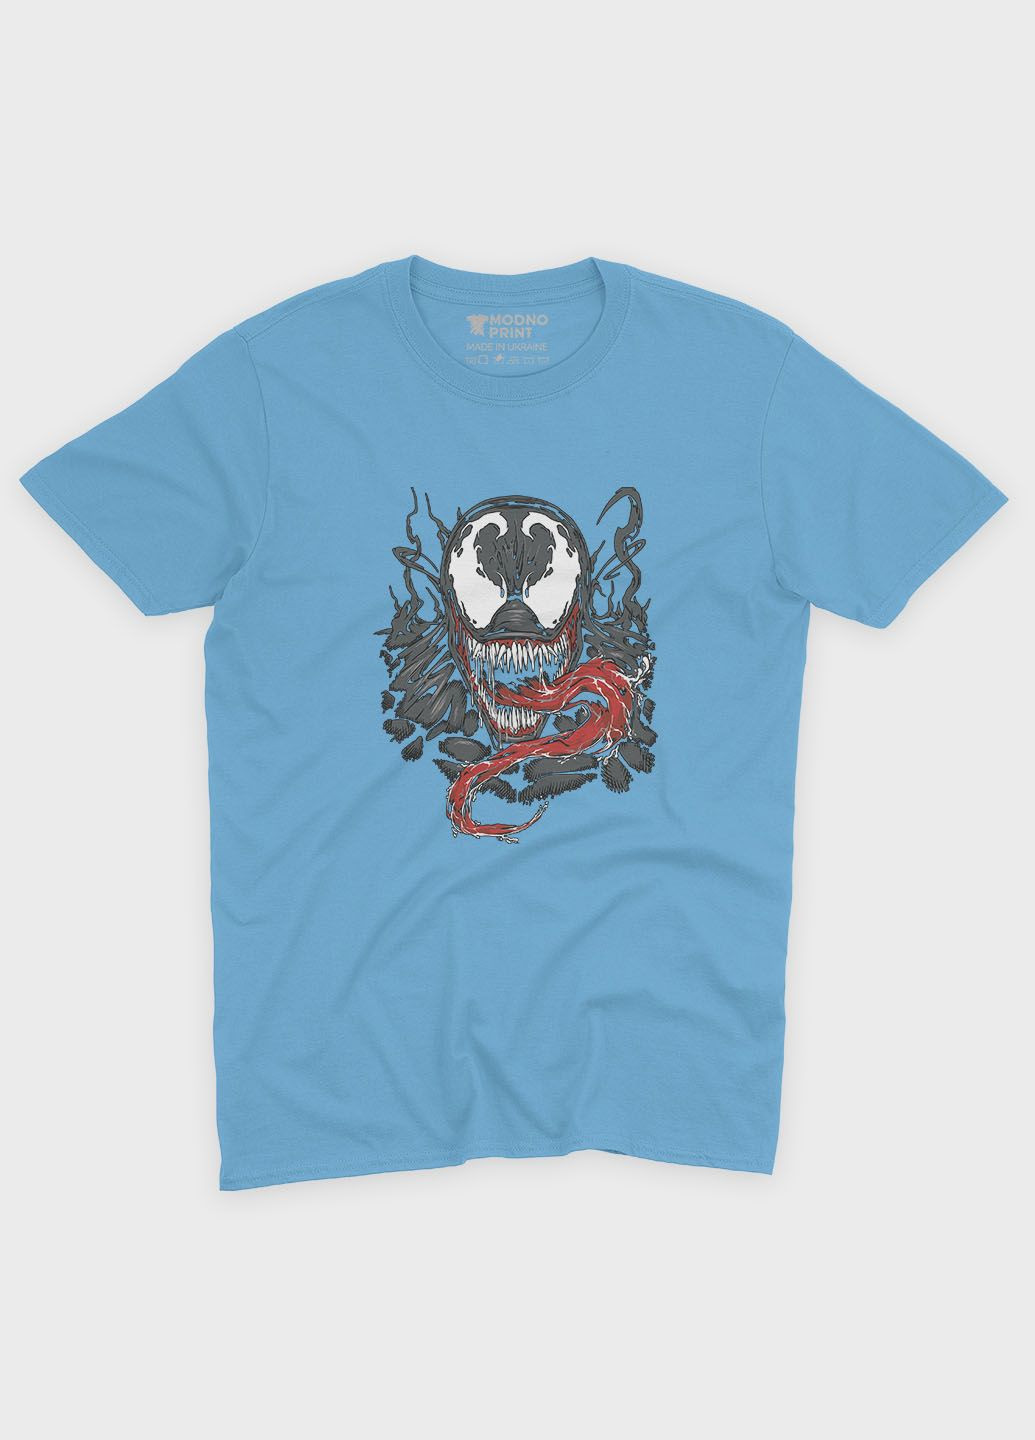 Голубая демисезонная футболка для мальчика с принтом супервора - веном (ts001-1-lbl-006-013-033-b) Modno